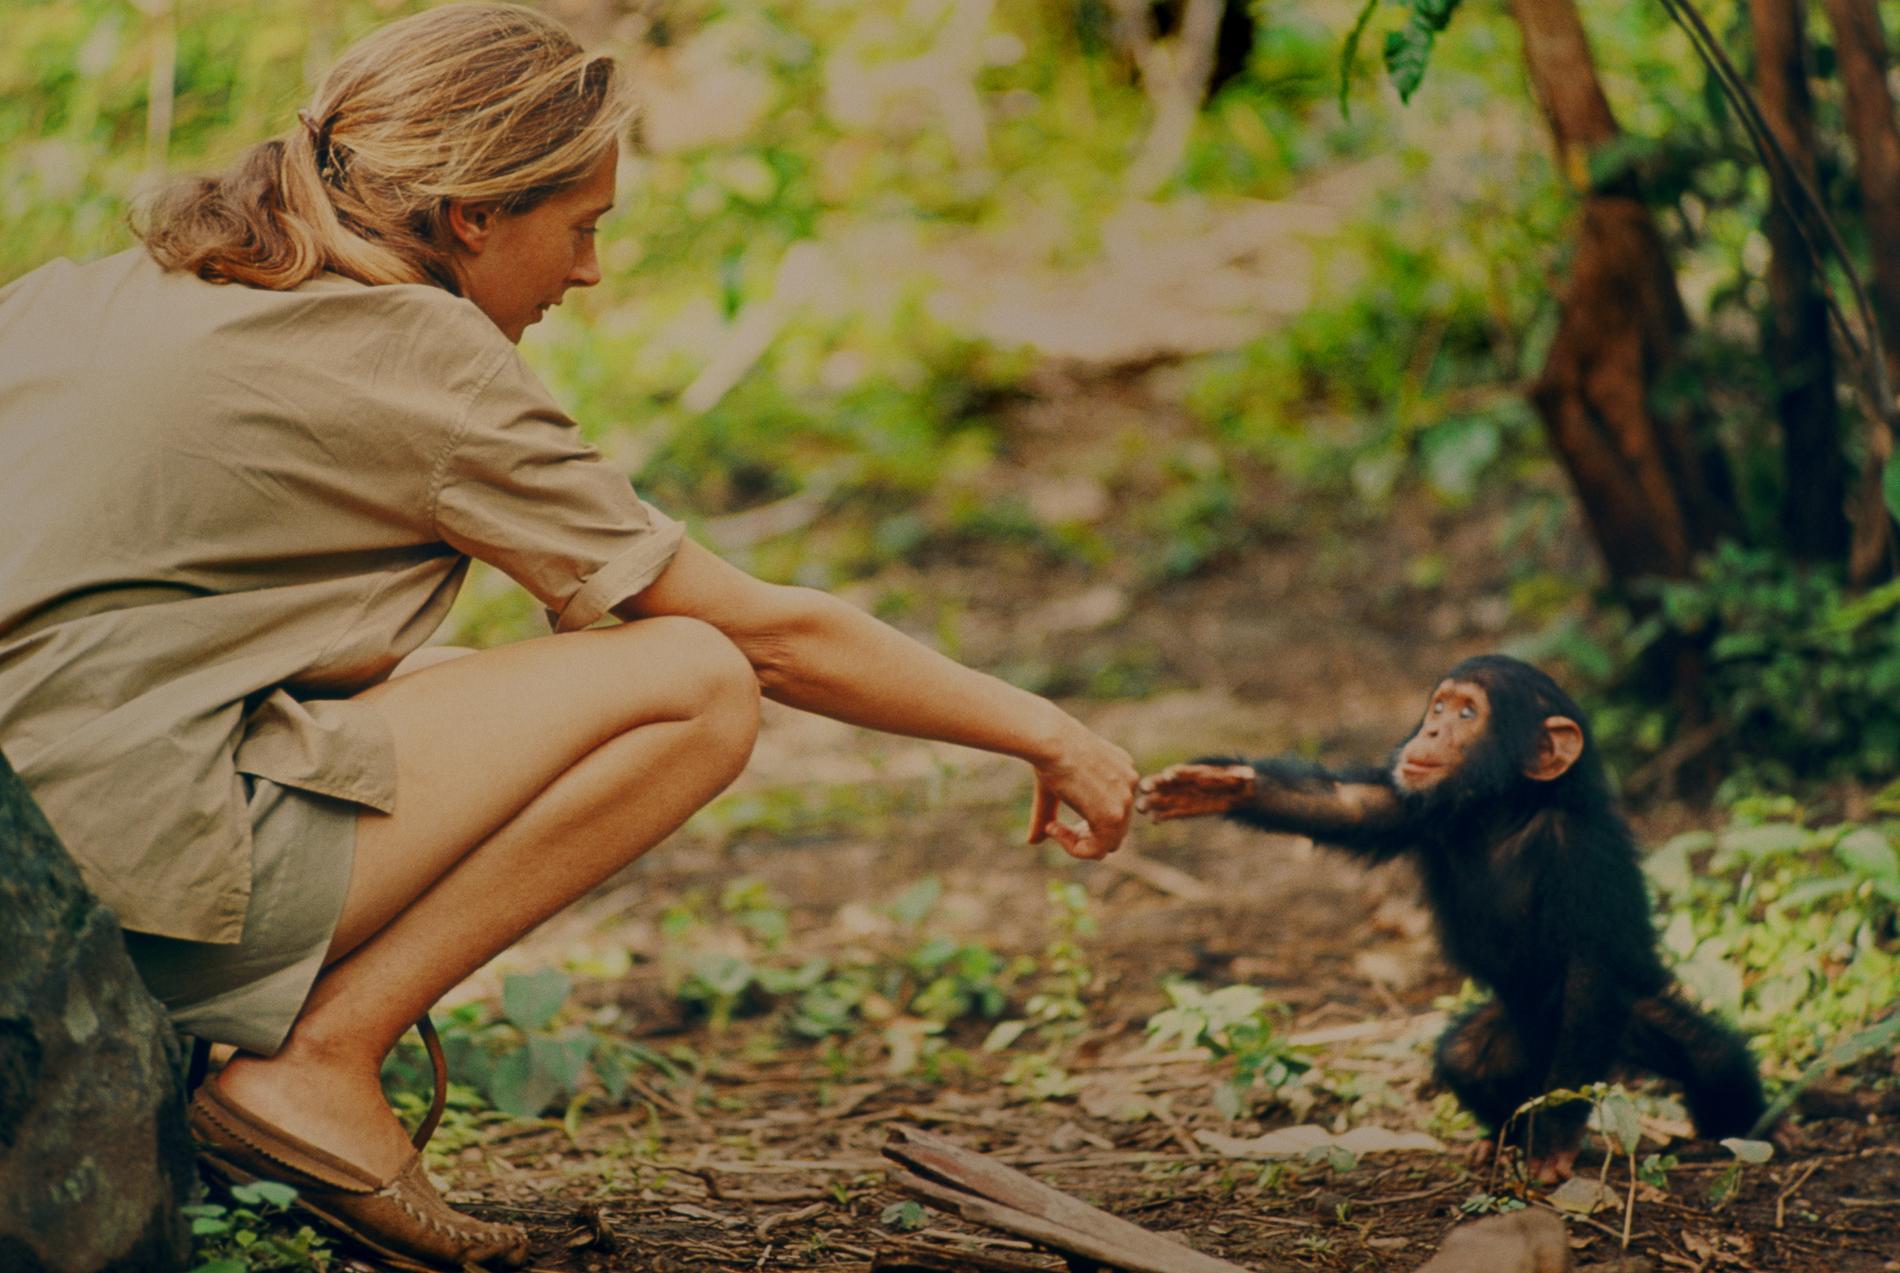 Jane Goodall har vigt sitt liv åt att studera schimpanser, och hennes forskning revolutionerade vår förståelse av naturen och vårt ursprung.